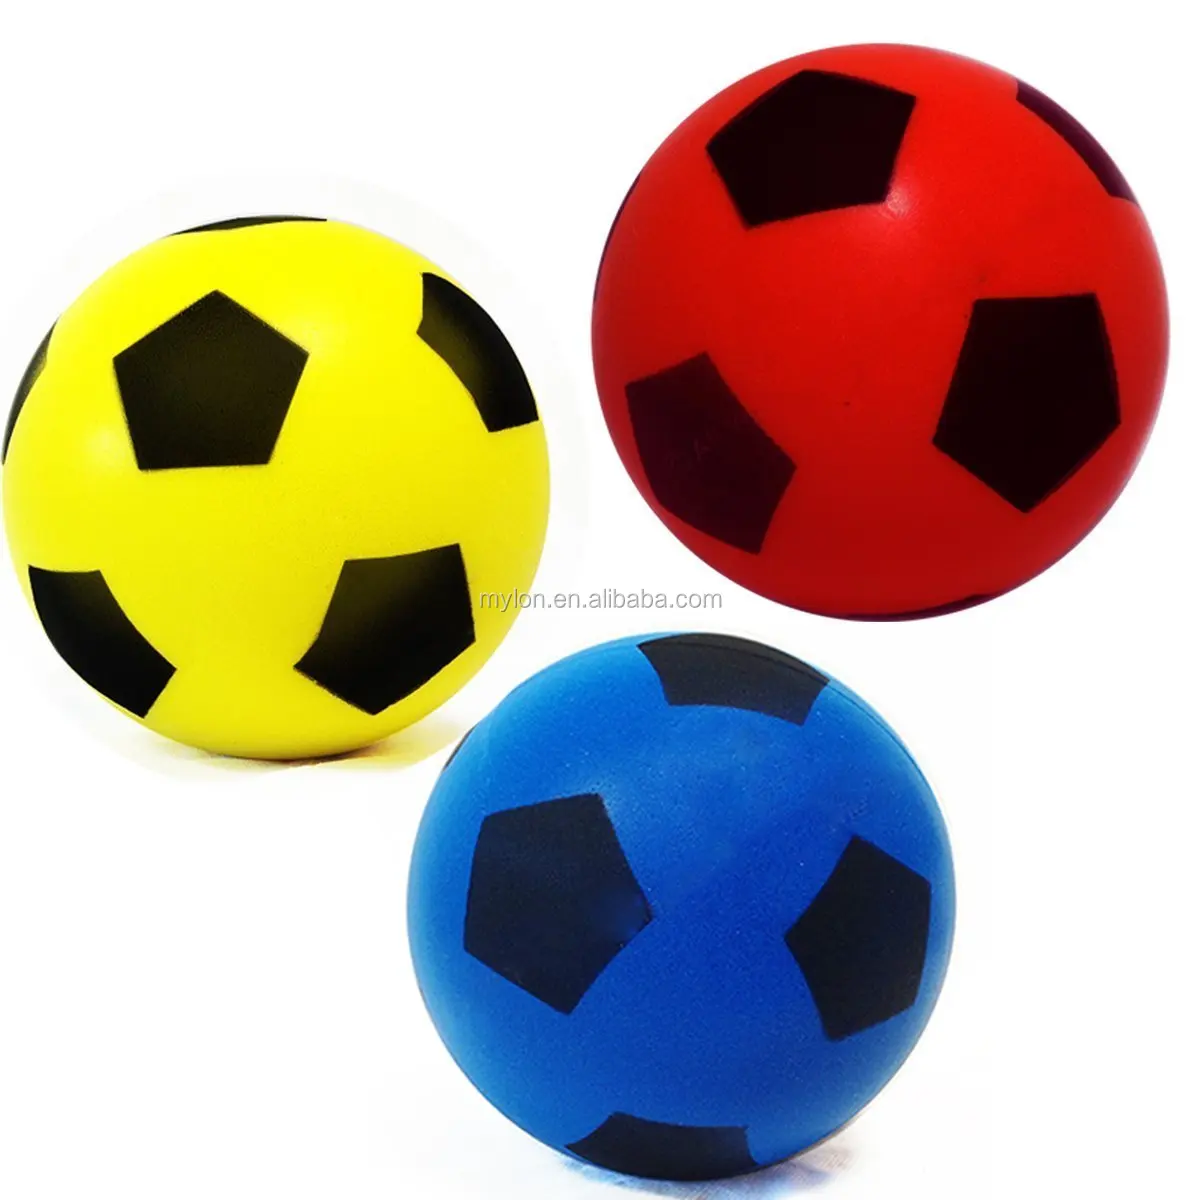 Мяч 6 футбол. Мяч PU футбол 7,6см tx31497. Мяч разноцветный. Мячи детские. Цветные мячики для детей.